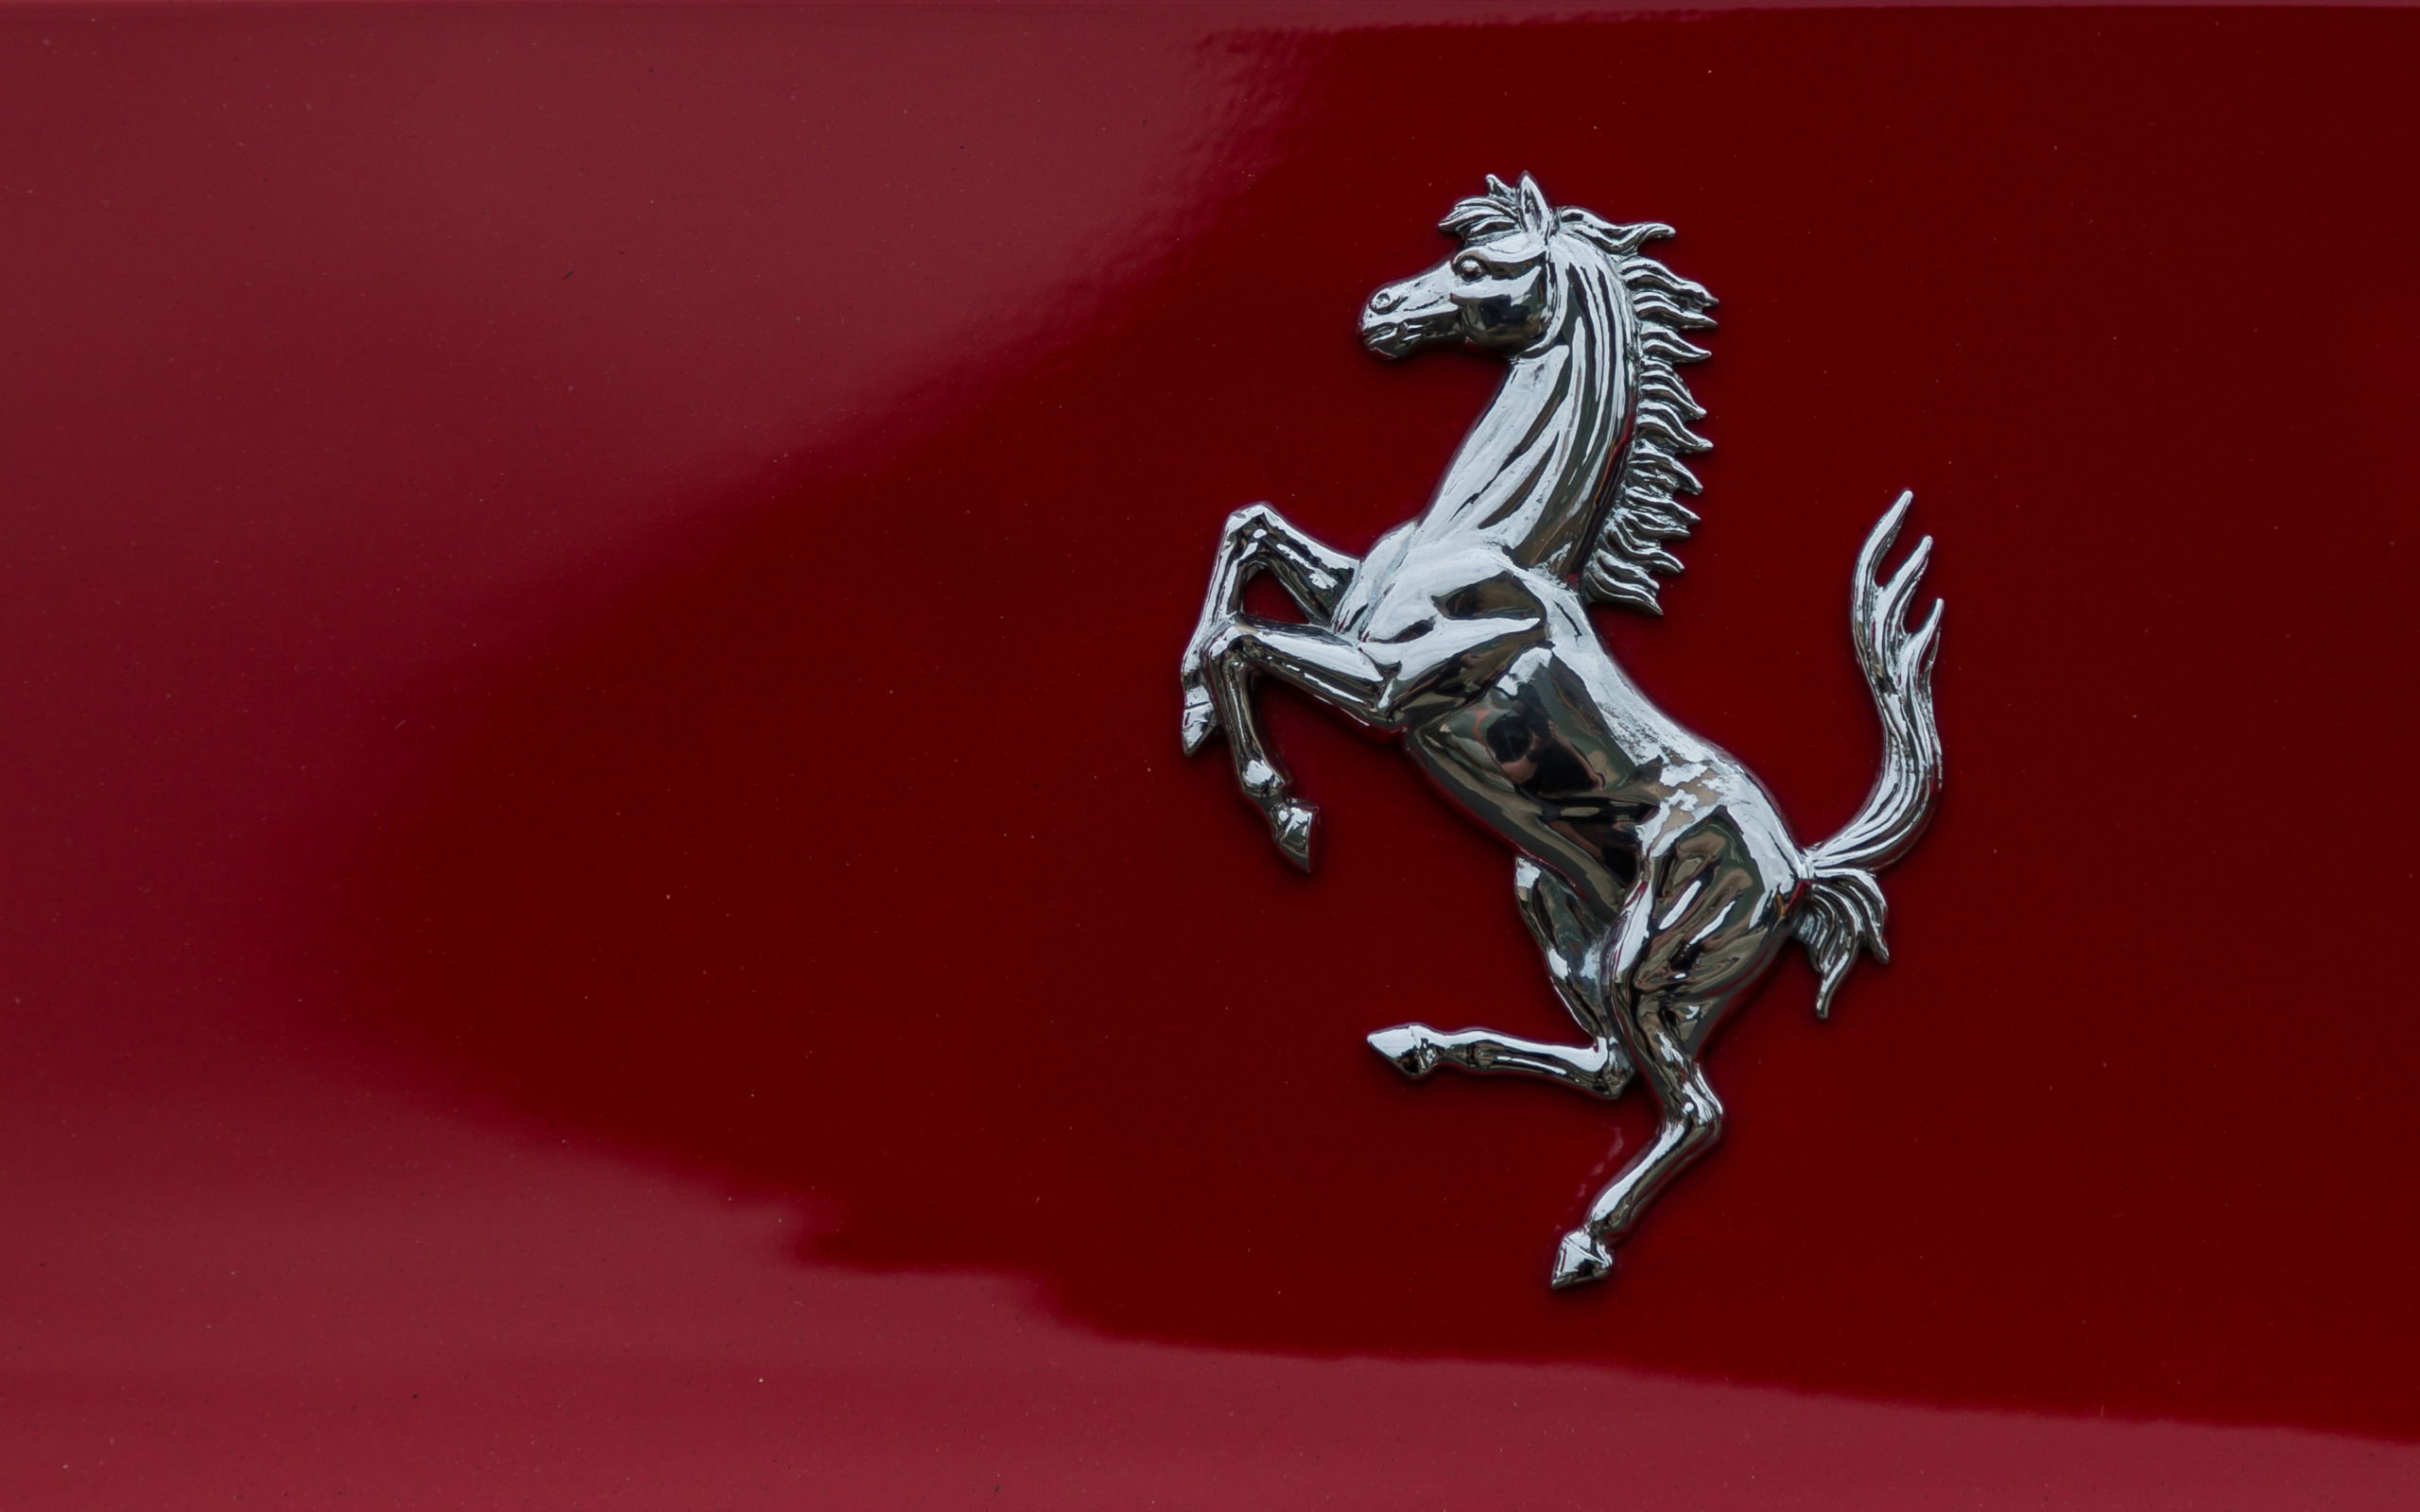     Ferrari    ferrari    2560x1600